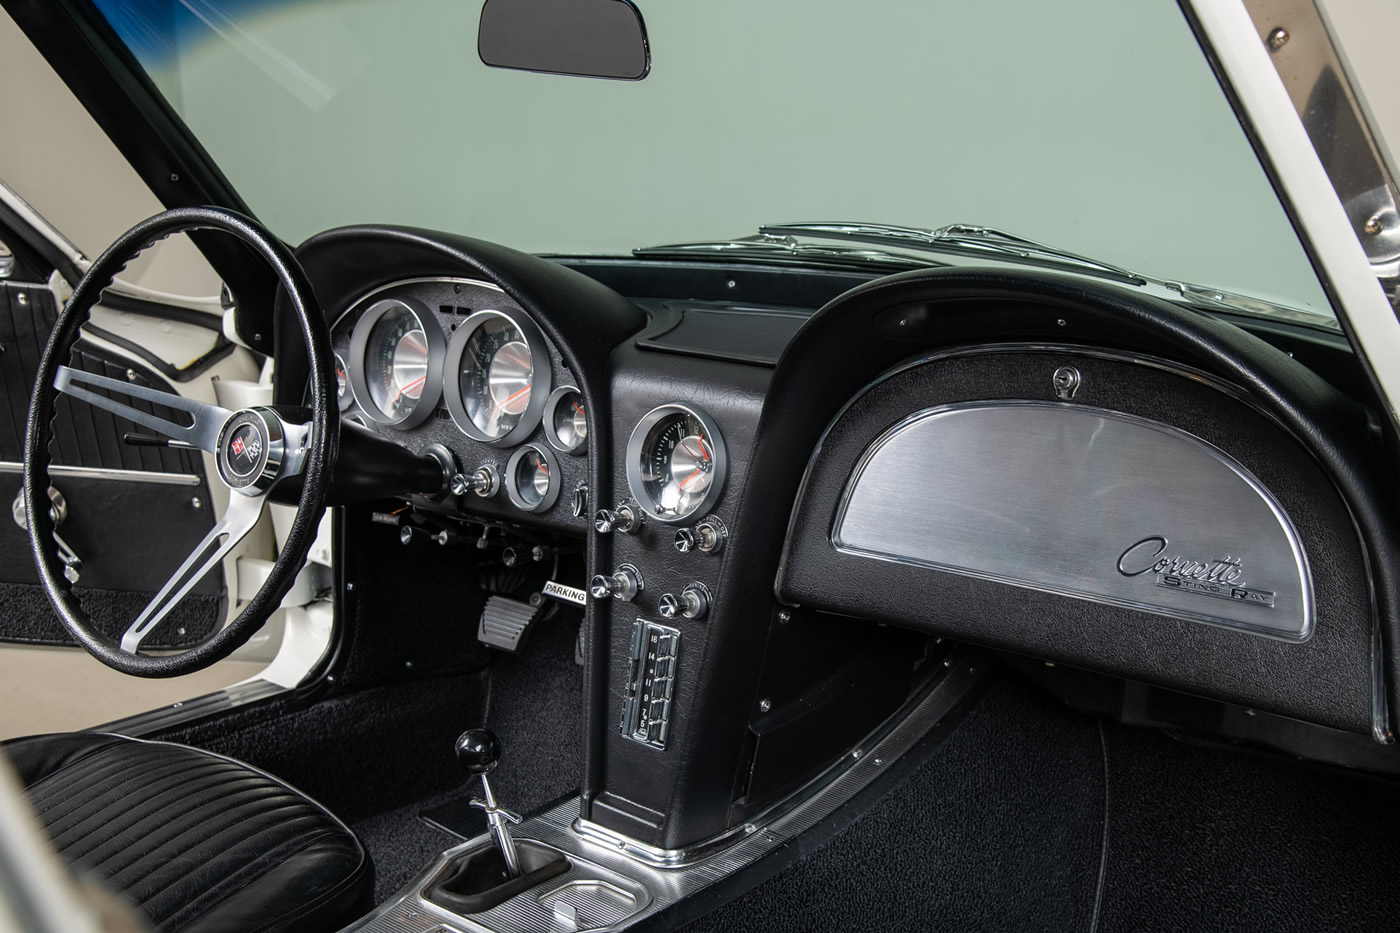 1963 Corvette Coupe in Ermine White